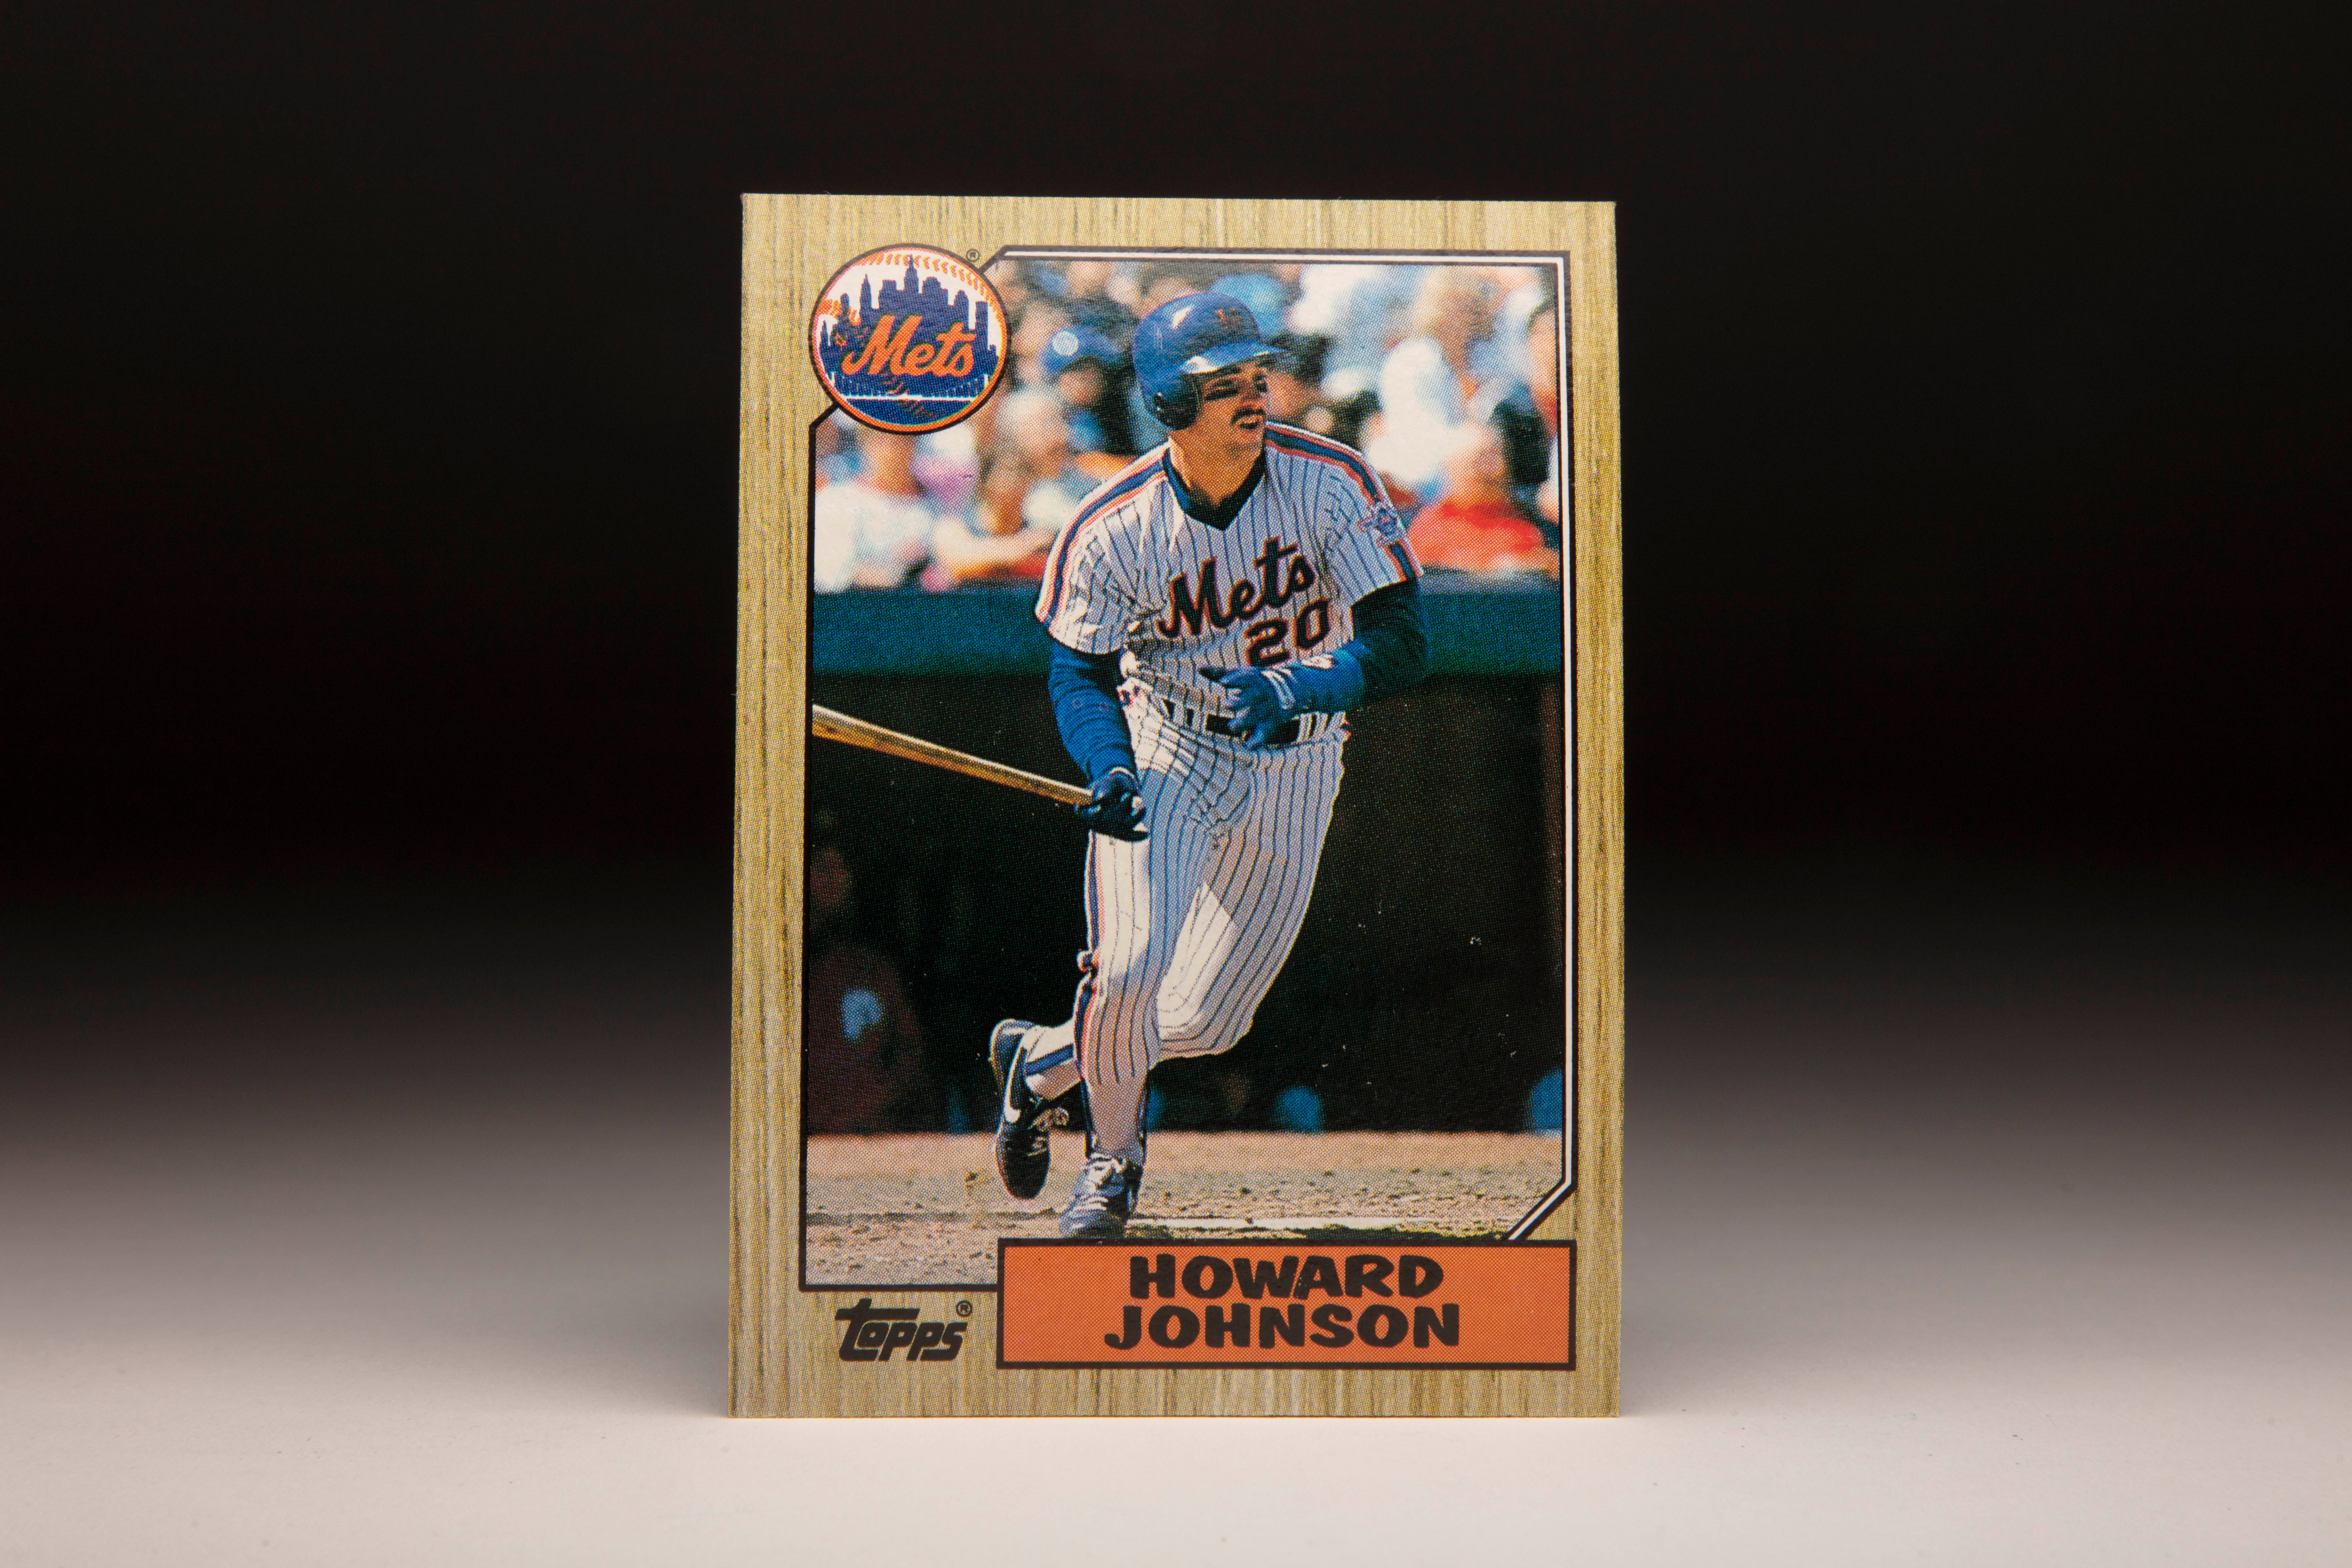 #CardCorner: 1987 Topps Howard Johnson